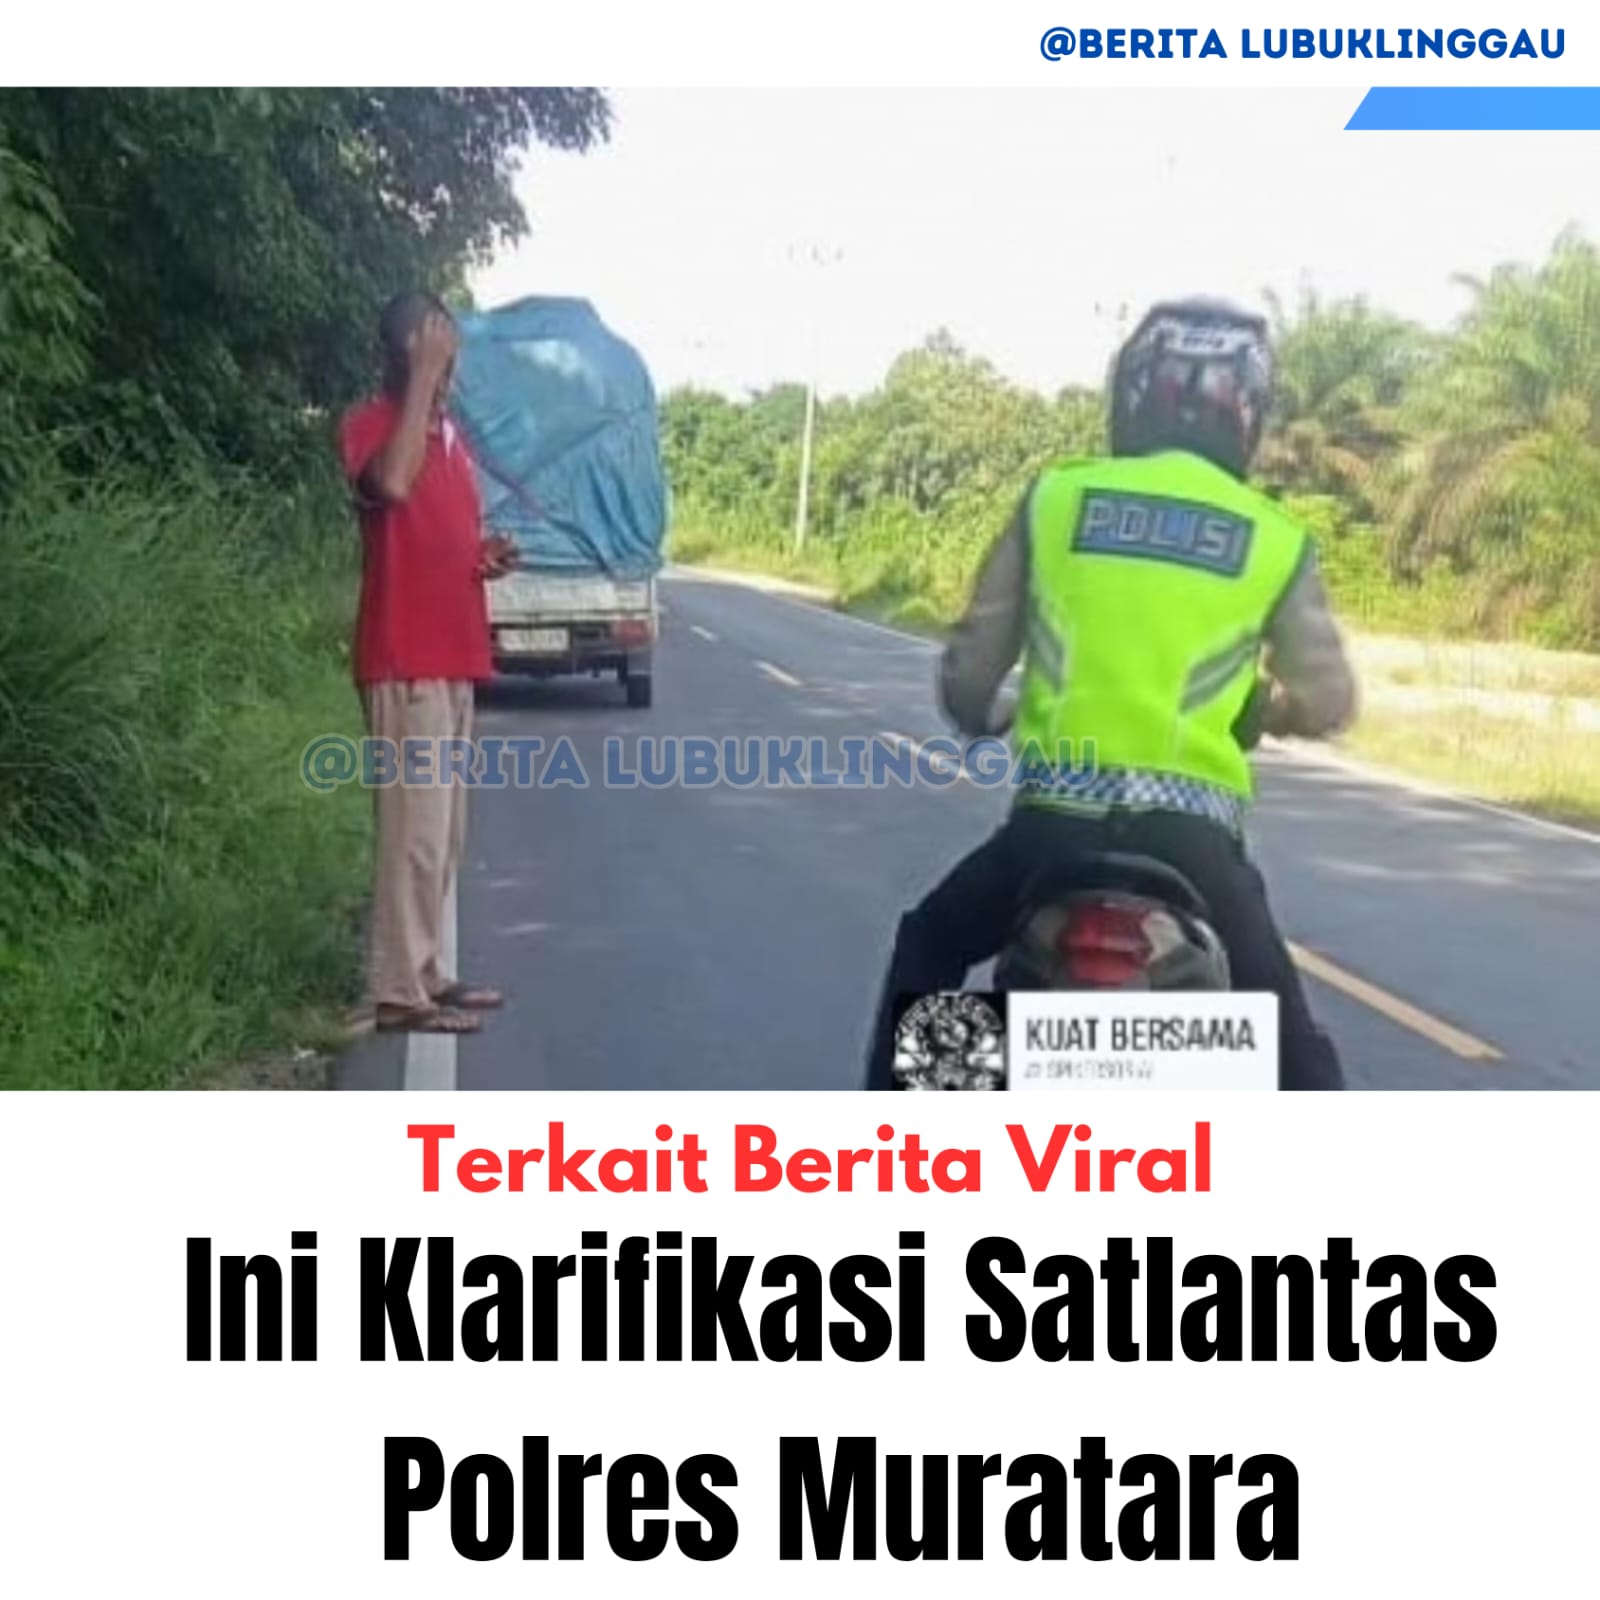 Terkait Berita Viral, Ini Klarifikasi Satlantas Polres Muratara